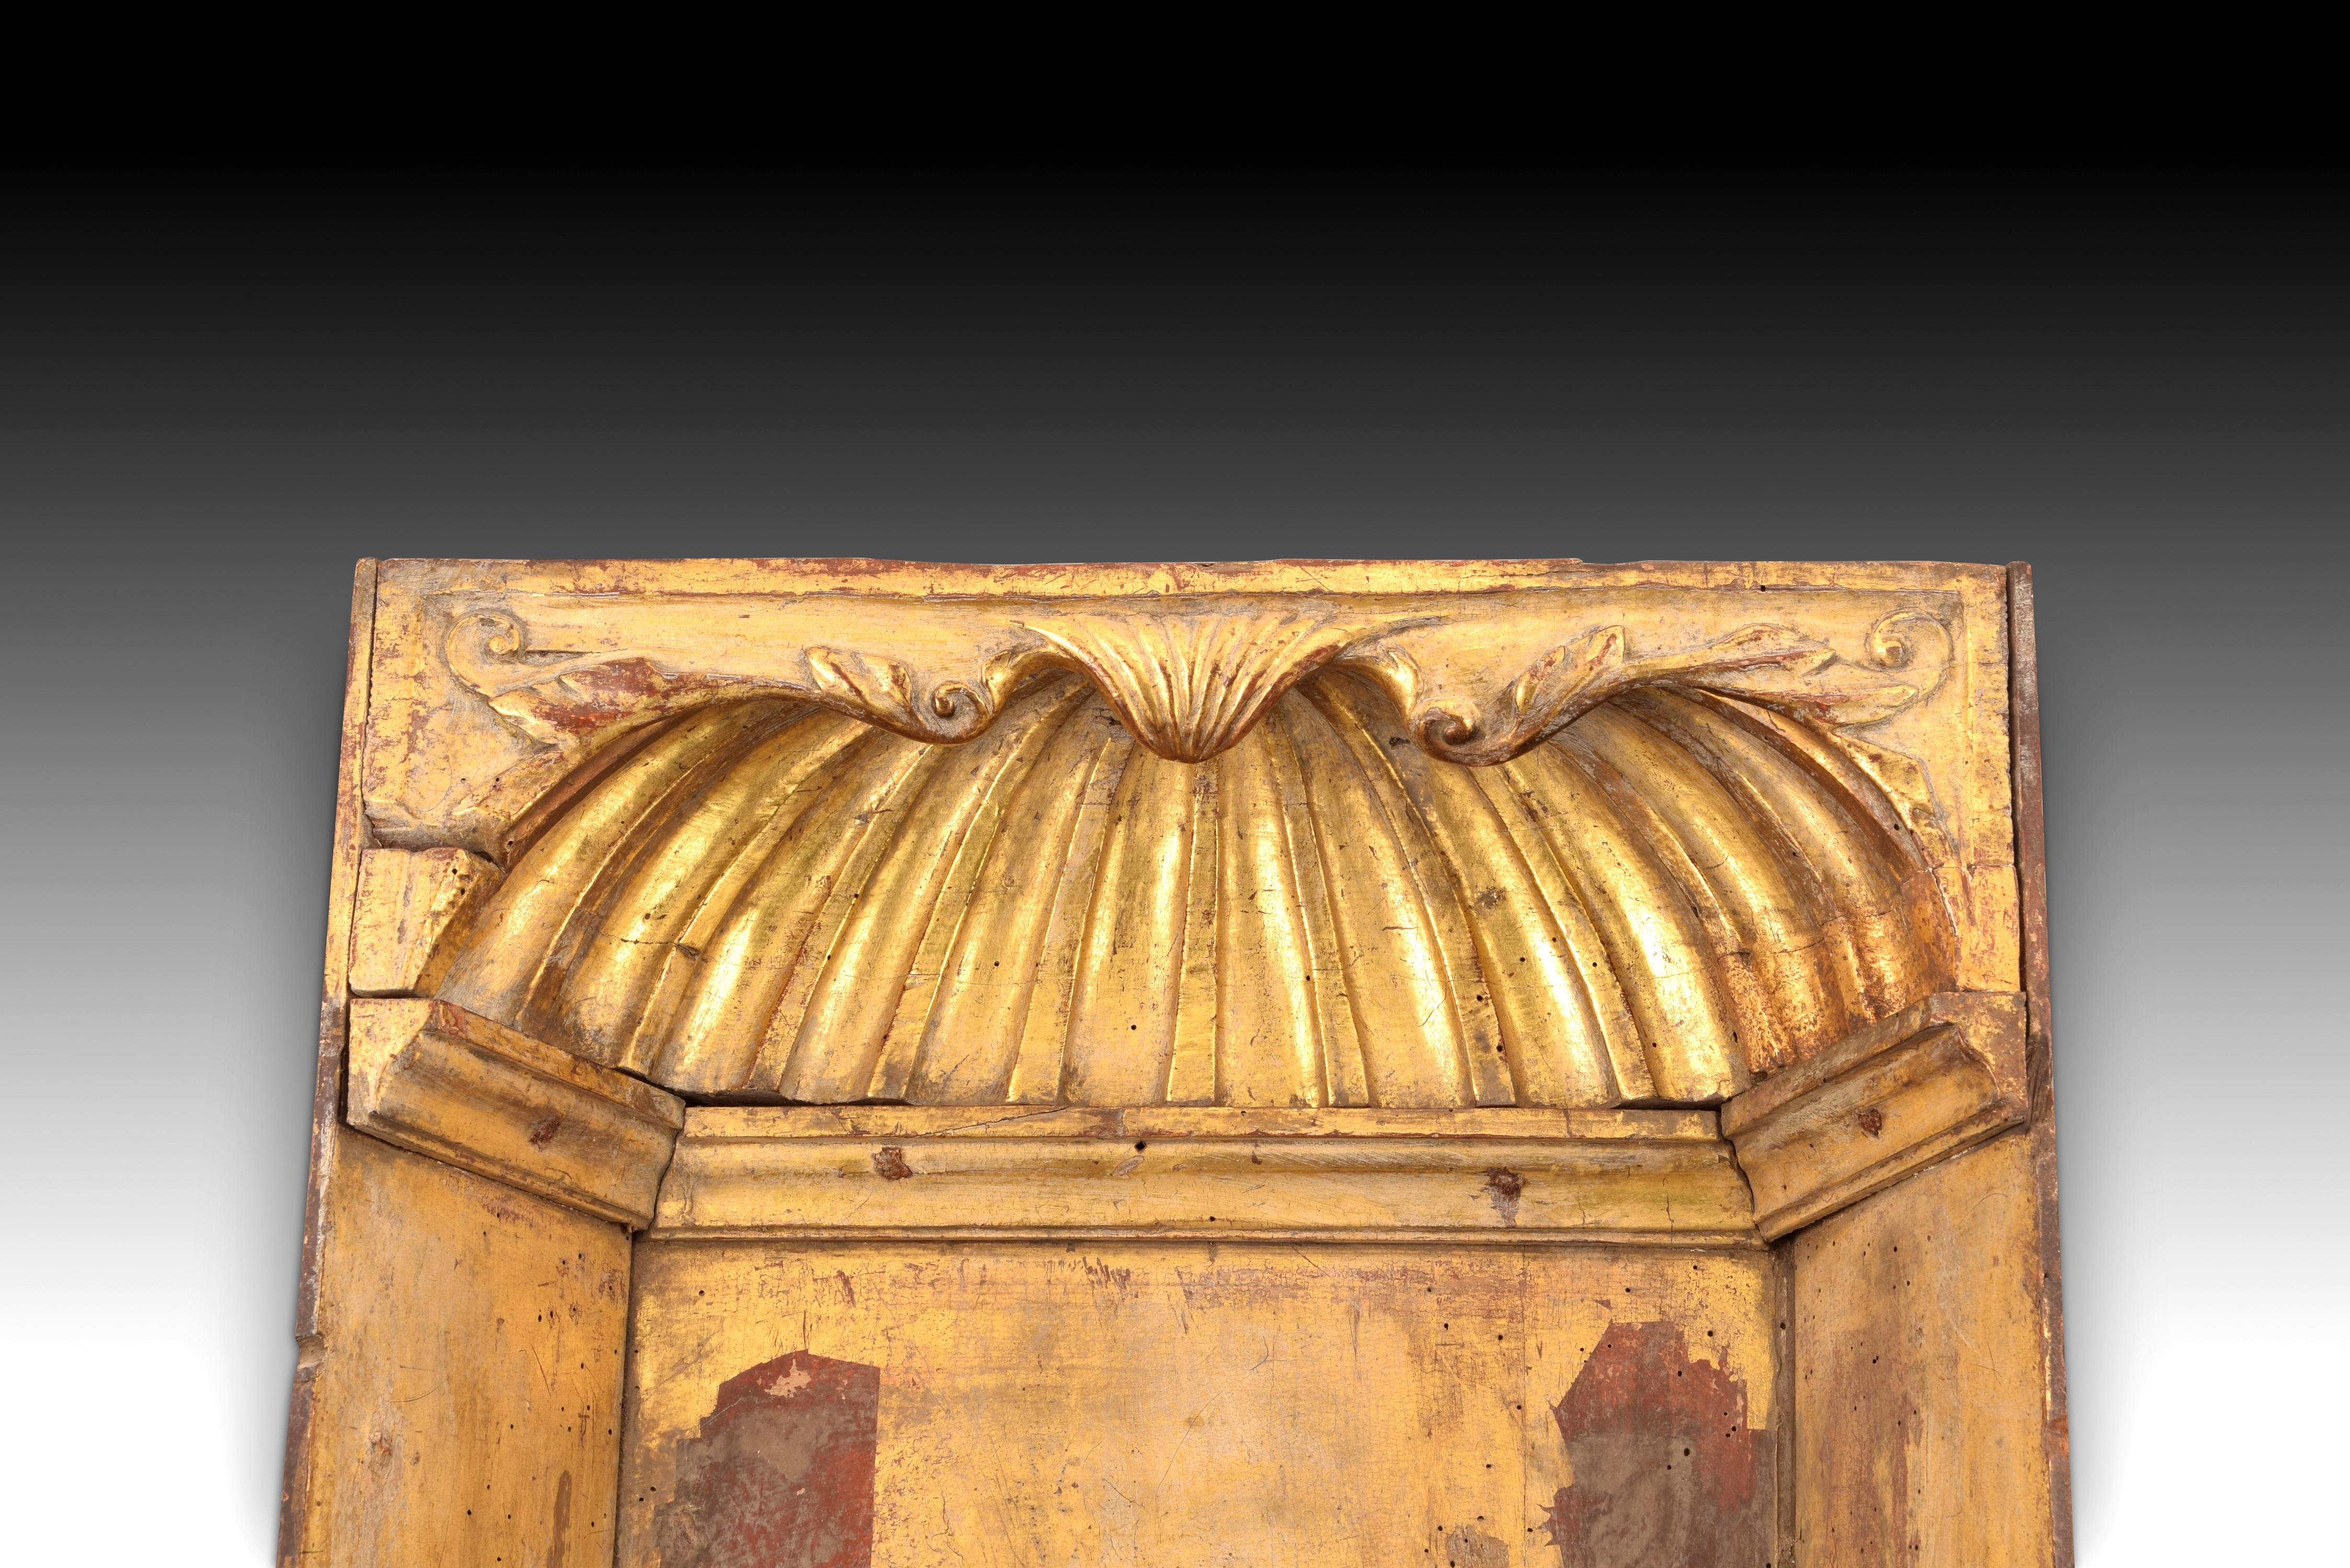 Nische. Vergoldetes und polychromes Kiefernholz. Spanien, 17. Jahrhundert. 
Nische aus geschnitztem und vergoldetem Kiefernholz, verziert mit Leisten, einer Vener-Form und pflanzlichen Elementen im oberen Teil, die einen deutlichen klassizistischen